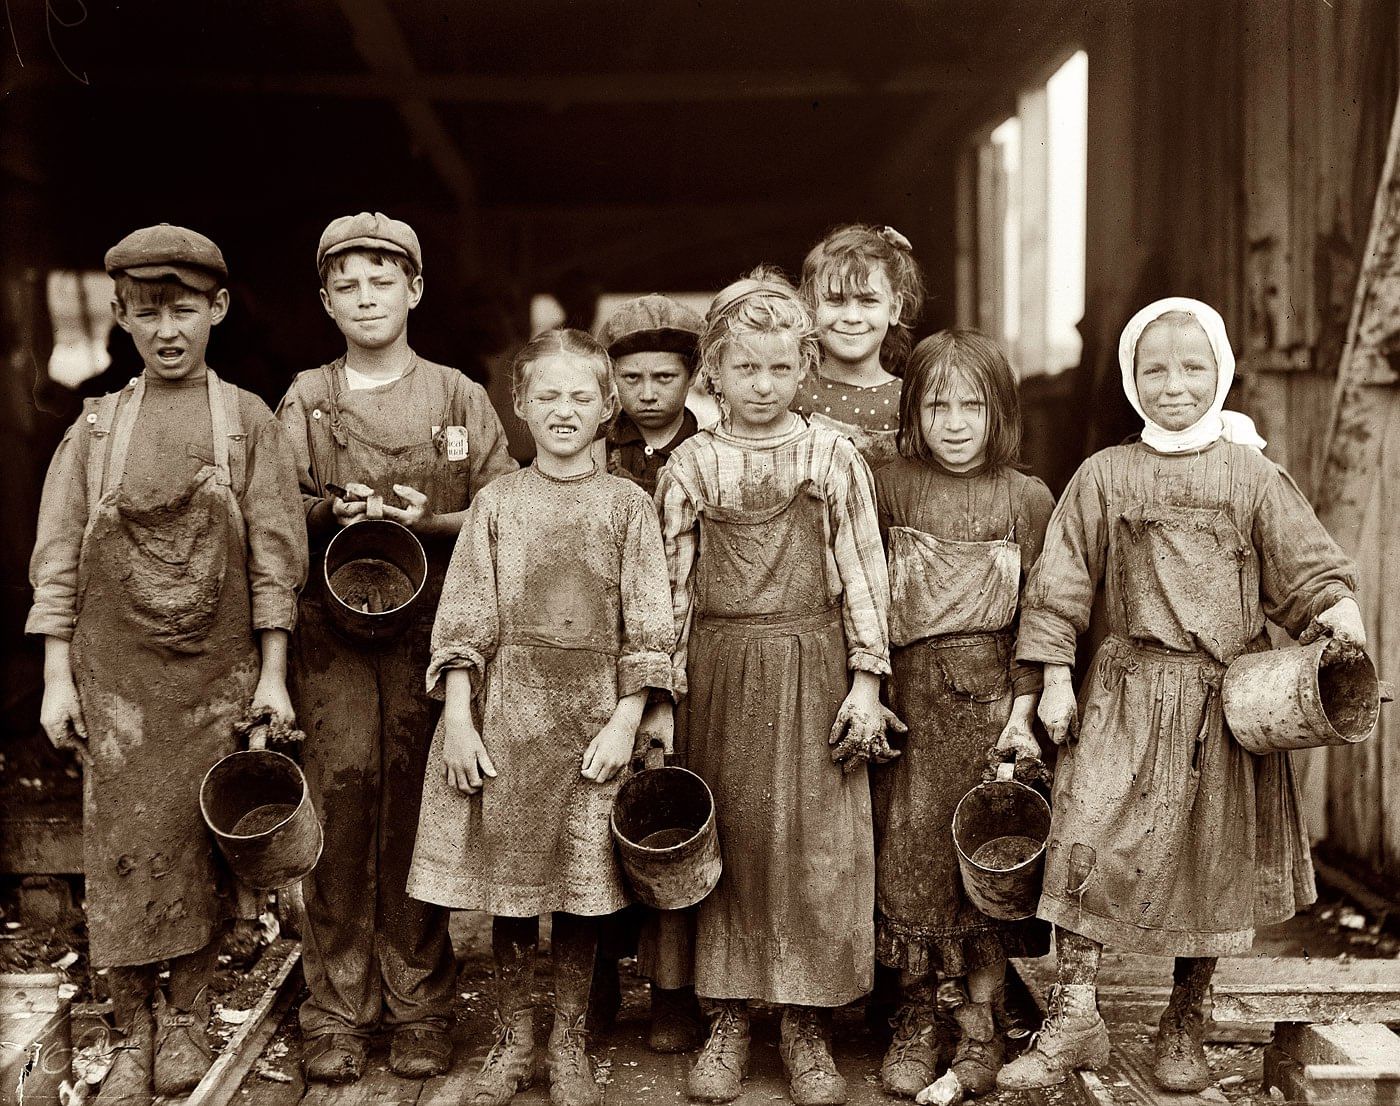 В Госдуму внесен проект о принудительных работах для детей. Депутаты требуют упразднить в России права человека, даже на собственных детей